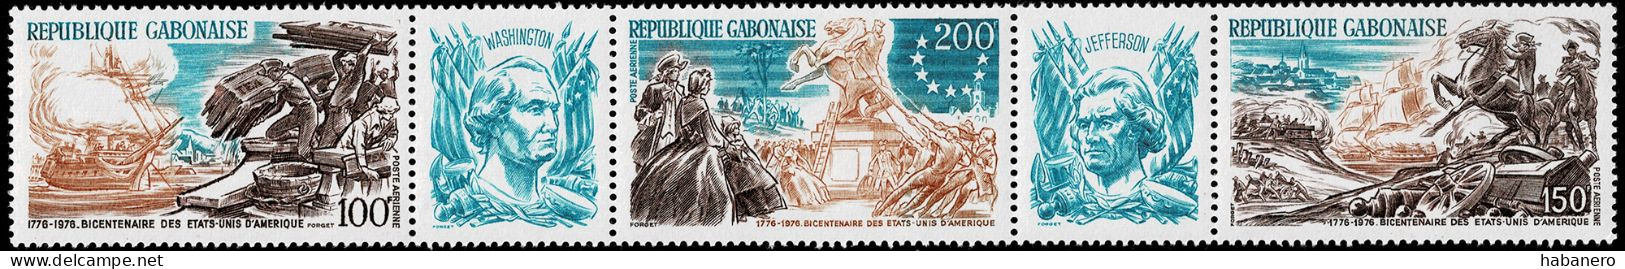 GABON 1976 Mi 589-591 BICENTENARY OF AMERICAN REVOLUTION MINT STAMPS ** - Unabhängigkeit USA